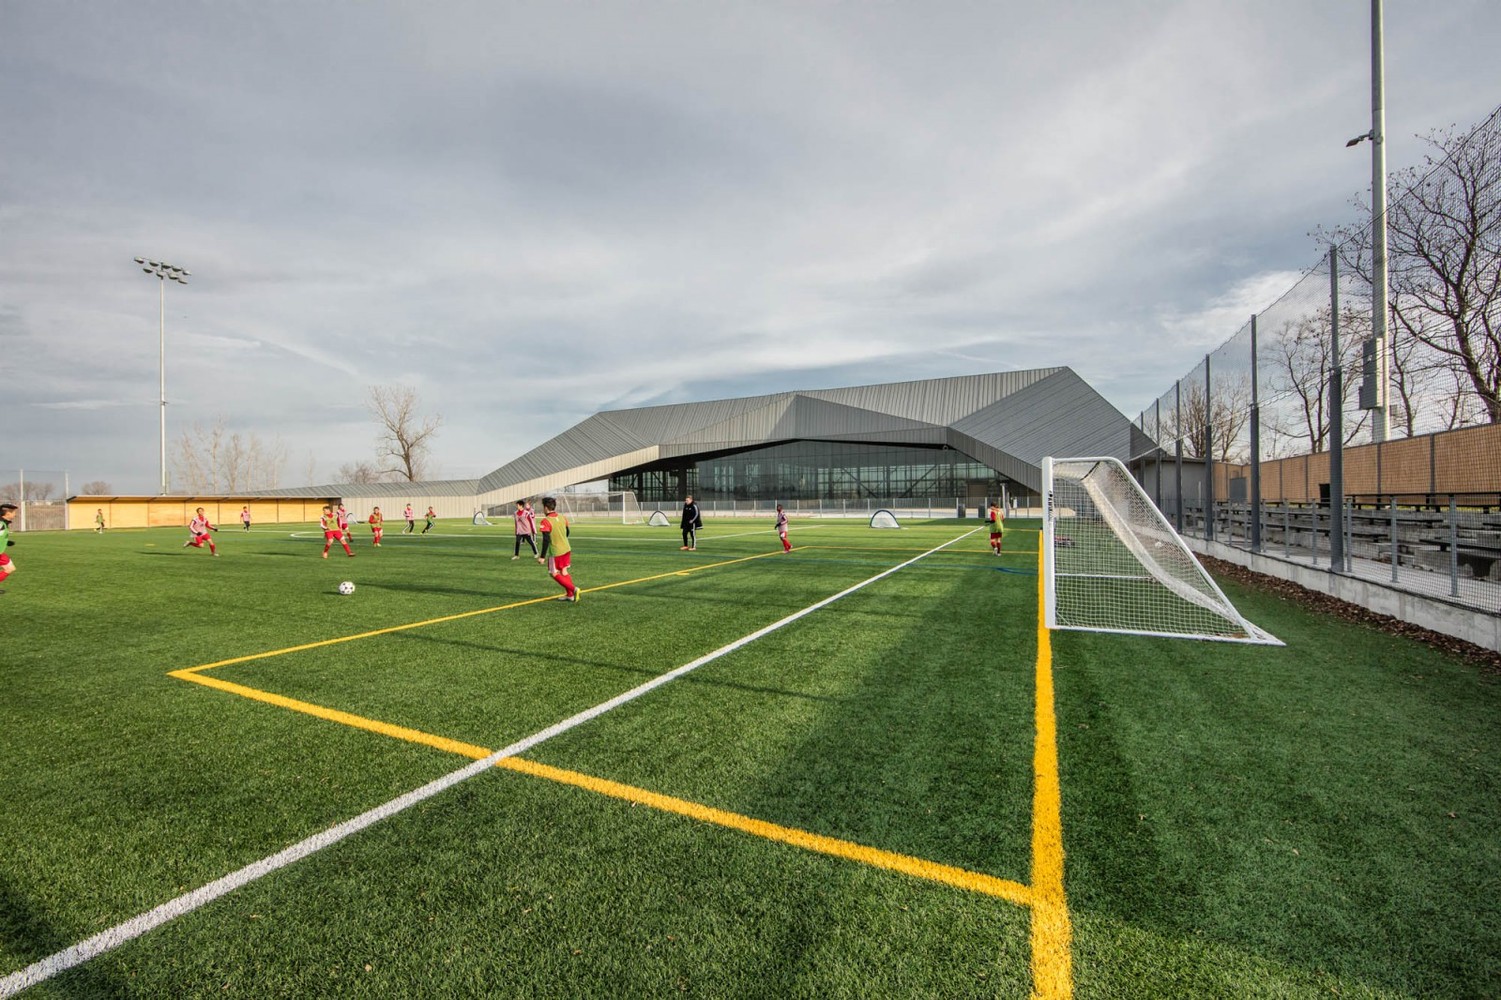 Стадион футбольного стадиона Монреаля / Saucier + Perrotte architectes + Hughes Condon Marler Architects. Изготовлено elZinc. Изображение © Olivier Blouin